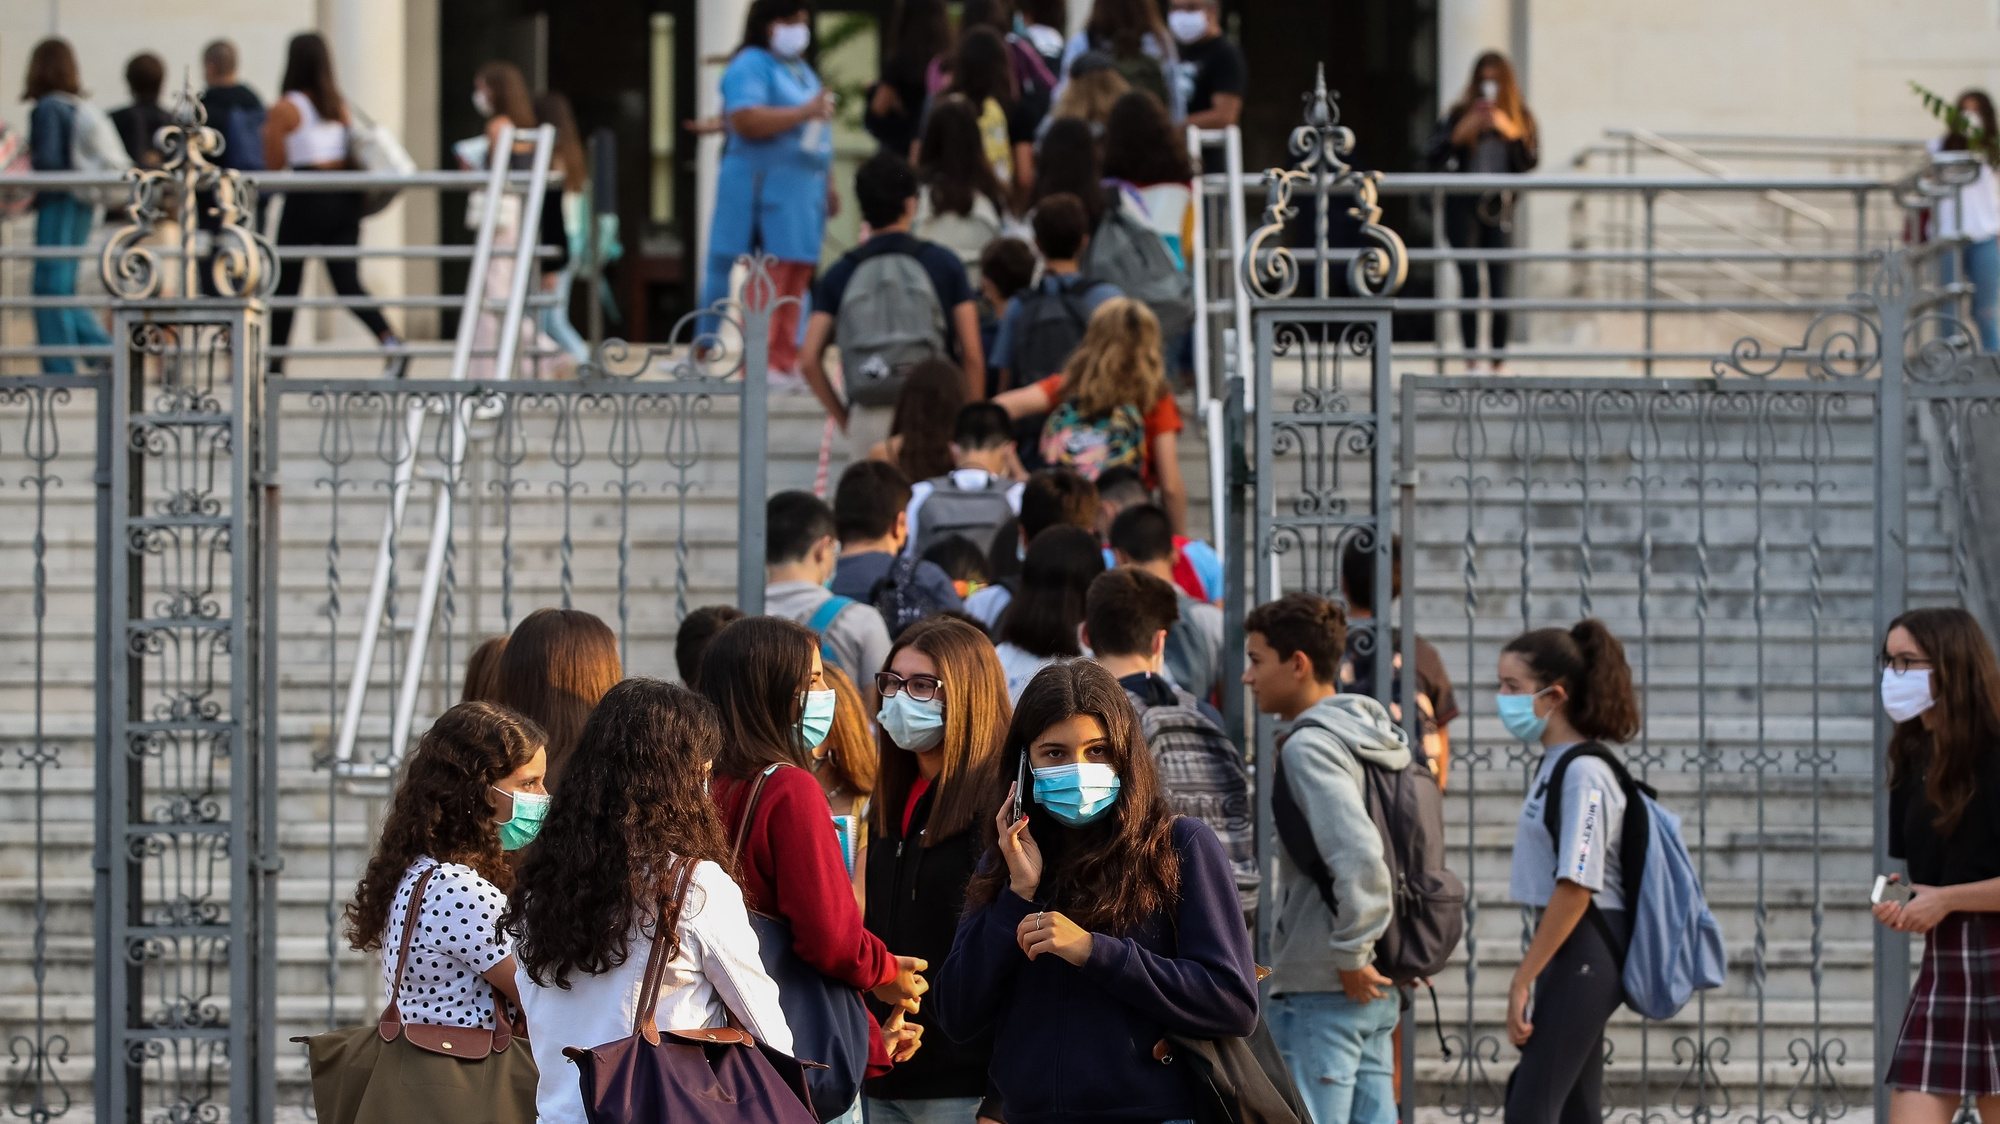 Alunos juntam-se à porta da Escola Secundária Infanta Dona Maria, no dia que assinala o regresso às aulas, com as regras no contexto de pandemia da Covid-19, em Coimbra, 17 de setembro de 2020. PAULO NOVAIS/LUSA